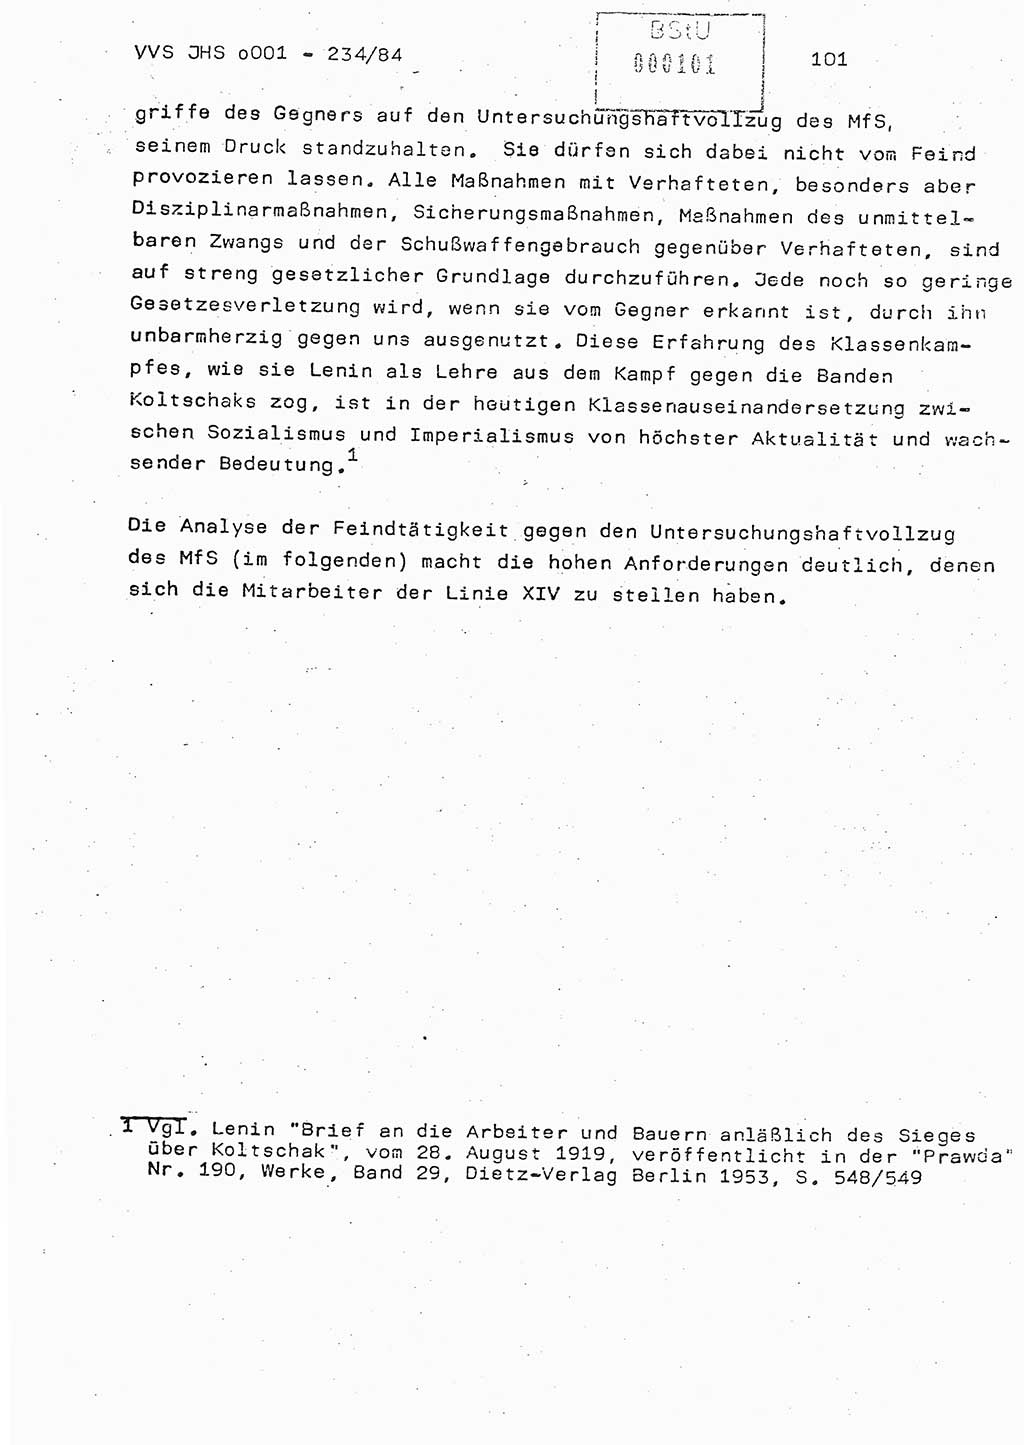 Dissertation Oberst Siegfried Rataizick (Abt. ⅩⅣ), Oberstleutnant Volkmar Heinz (Abt. ⅩⅣ), Oberstleutnant Werner Stein (HA Ⅸ), Hauptmann Heinz Conrad (JHS), Ministerium für Staatssicherheit (MfS) [Deutsche Demokratische Republik (DDR)], Juristische Hochschule (JHS), Vertrauliche Verschlußsache (VVS) o001-234/84, Potsdam 1984, Seite 101 (Diss. MfS DDR JHS VVS o001-234/84 1984, S. 101)